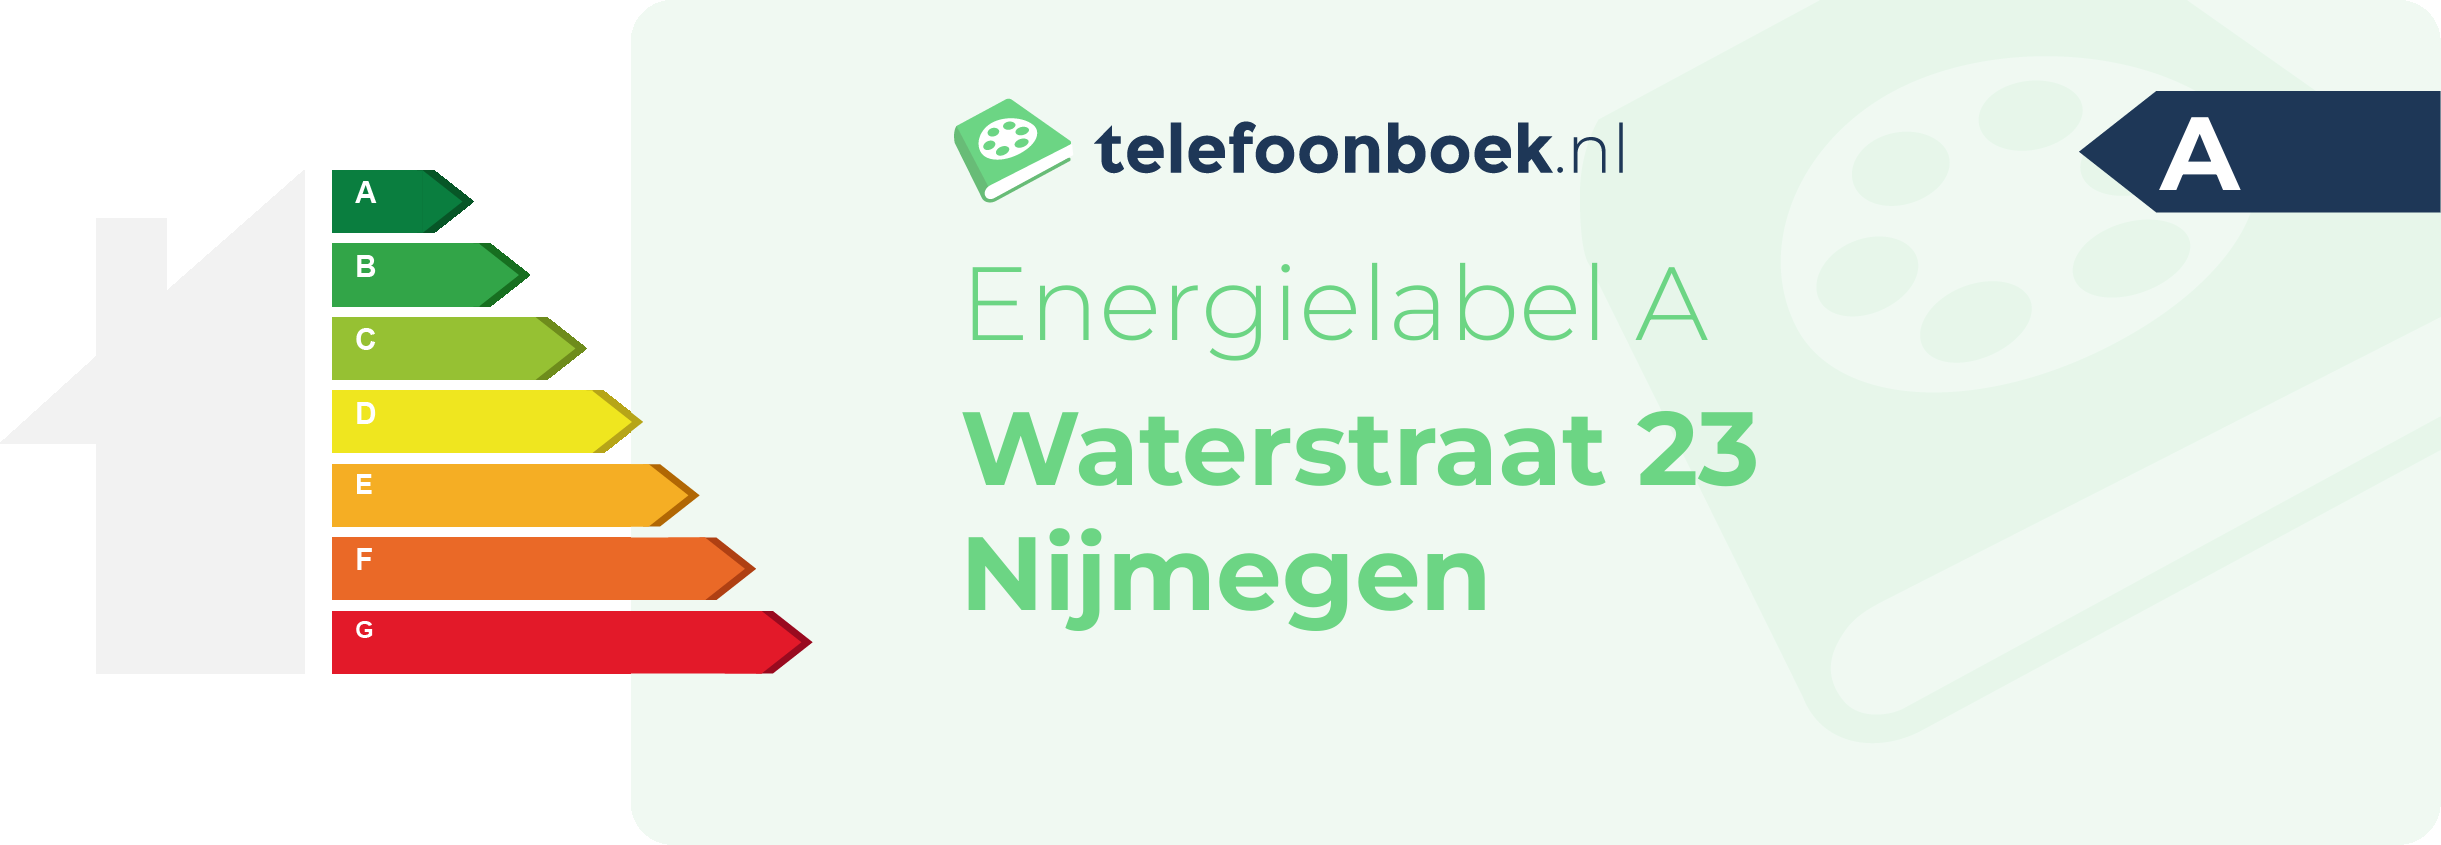 Energielabel Waterstraat 23 Nijmegen